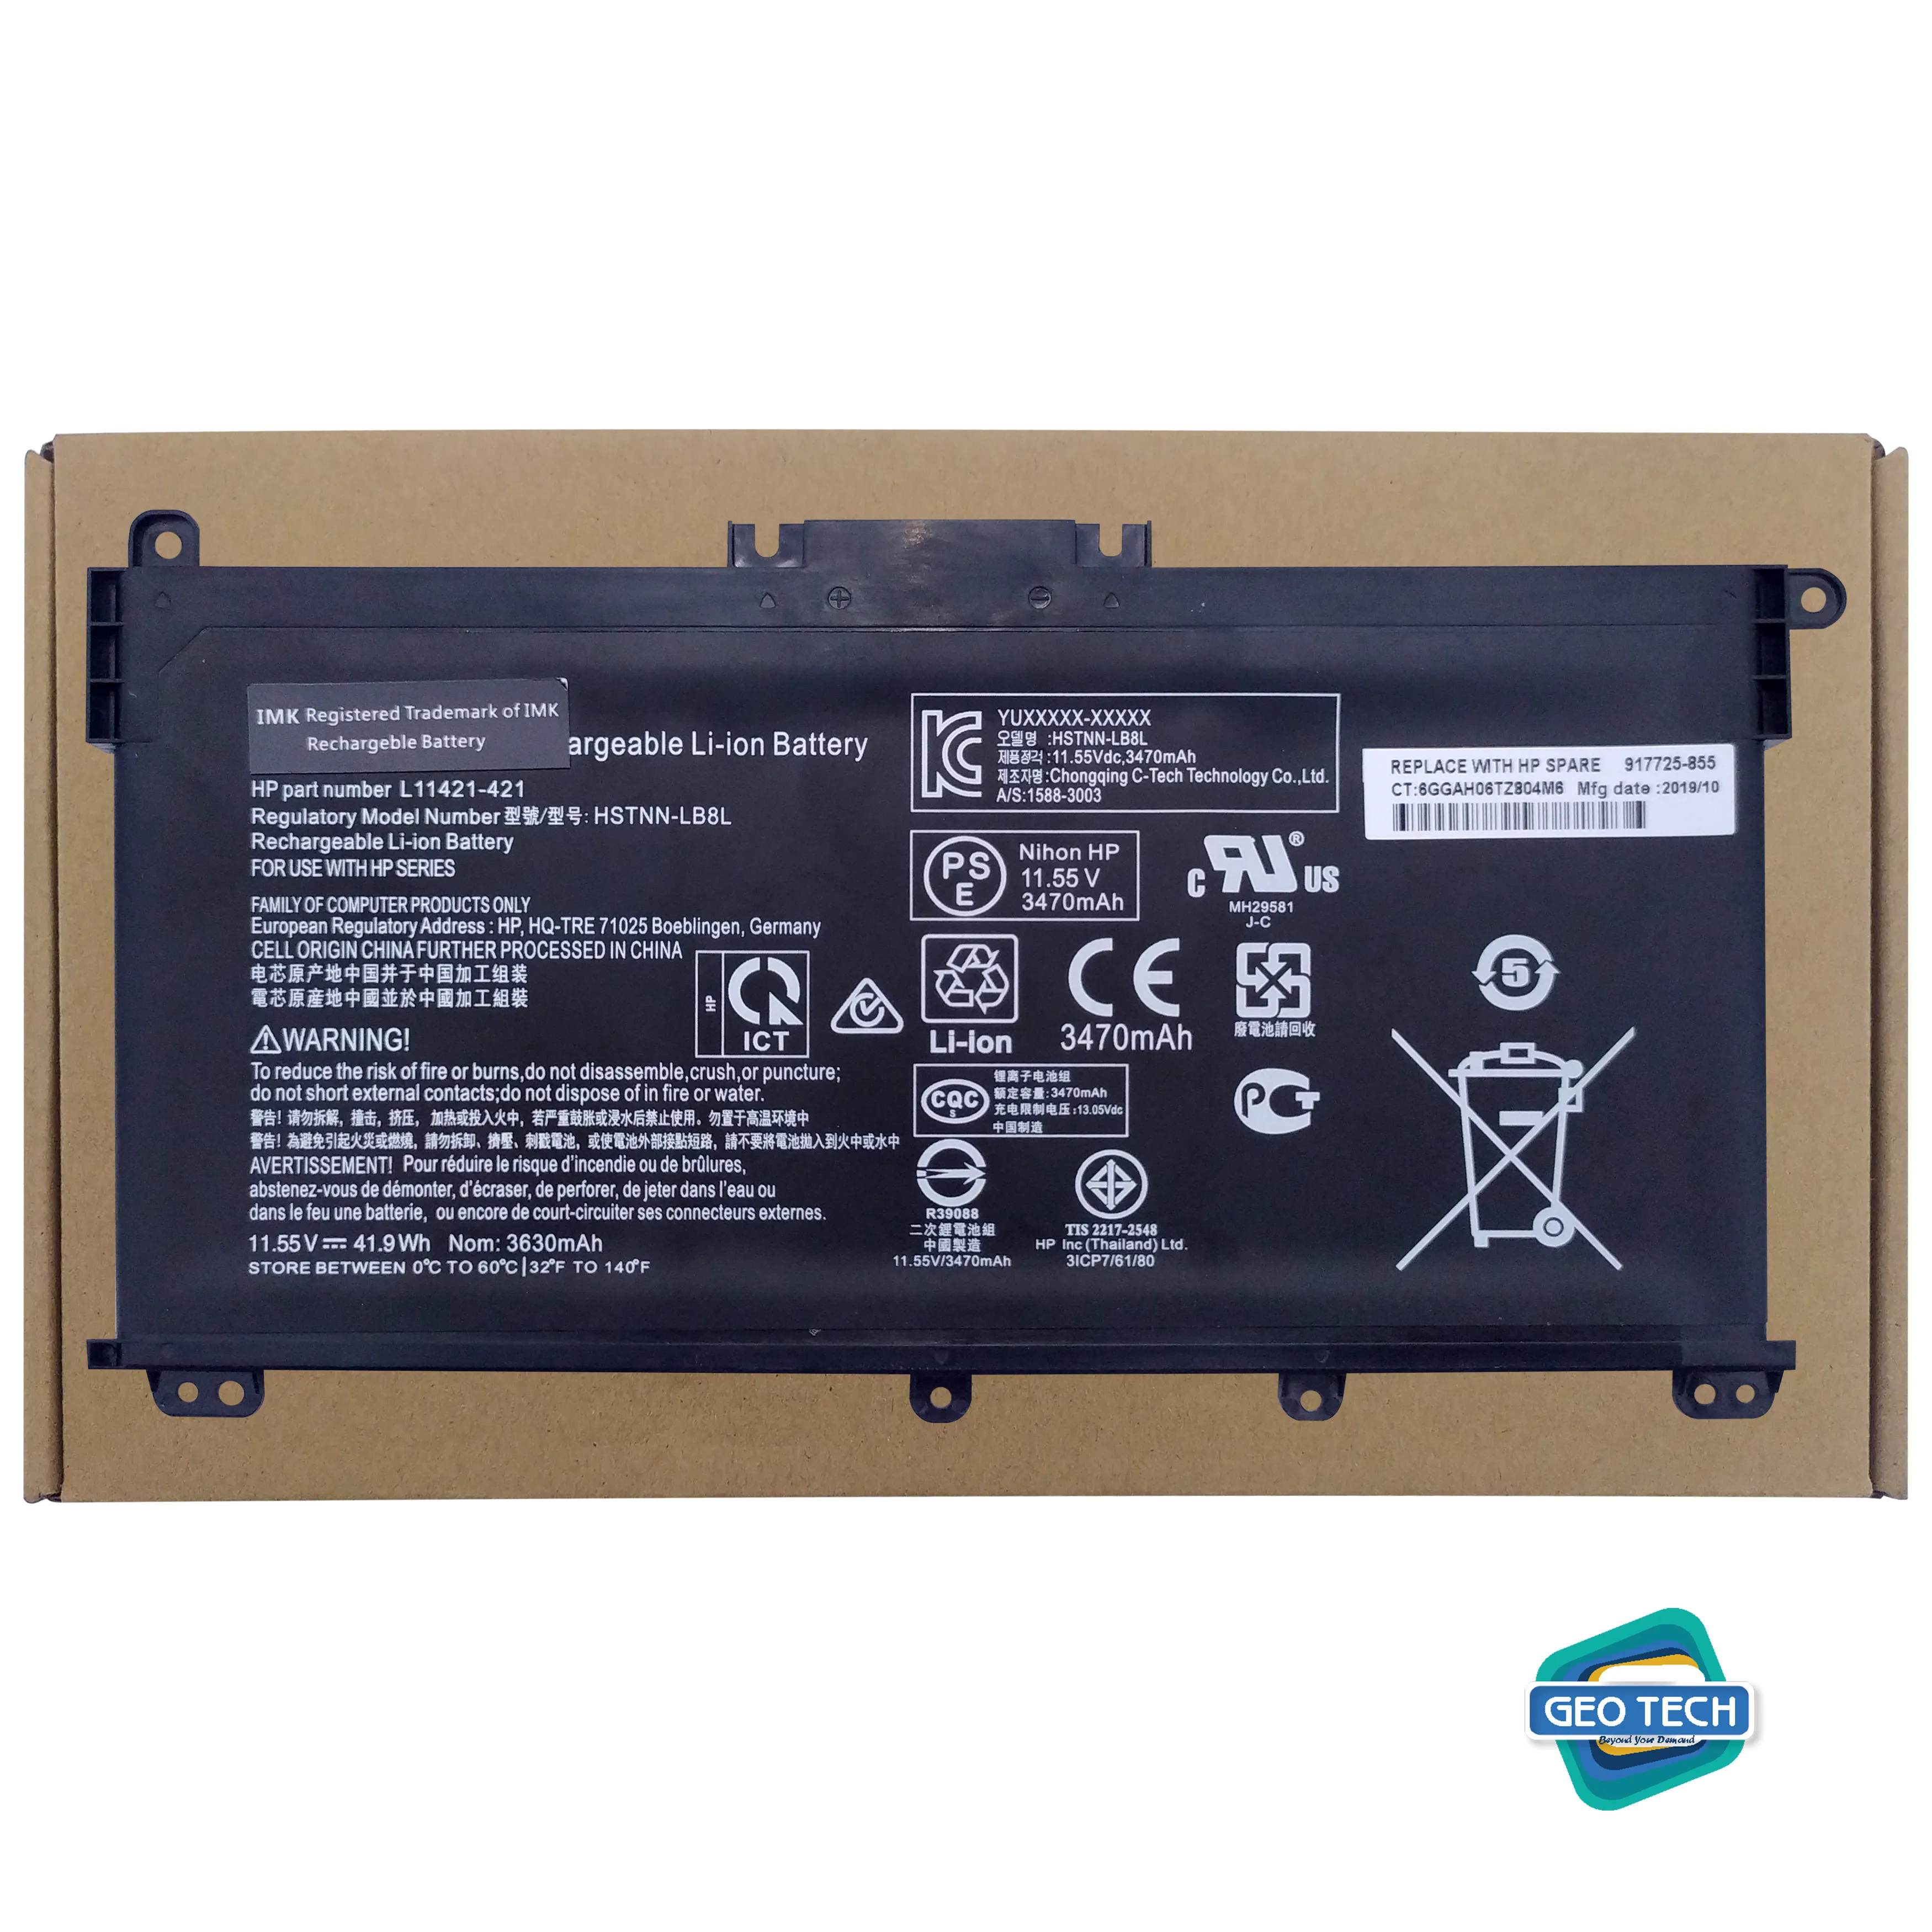 HT03XL Laptop Battery Compatible with HP Pavilion 14-CE 14-CF 14-CK 14-cm 14-DF 15-CS 15-CW 15-DA 15-DB 17-by 240 245 250 255 G7 340 348 G5 L11421-422 L11119-855 HSTNN-UB7J HSTNN-DB8R HSTNN-DB8S ORIGINAL BATTERY